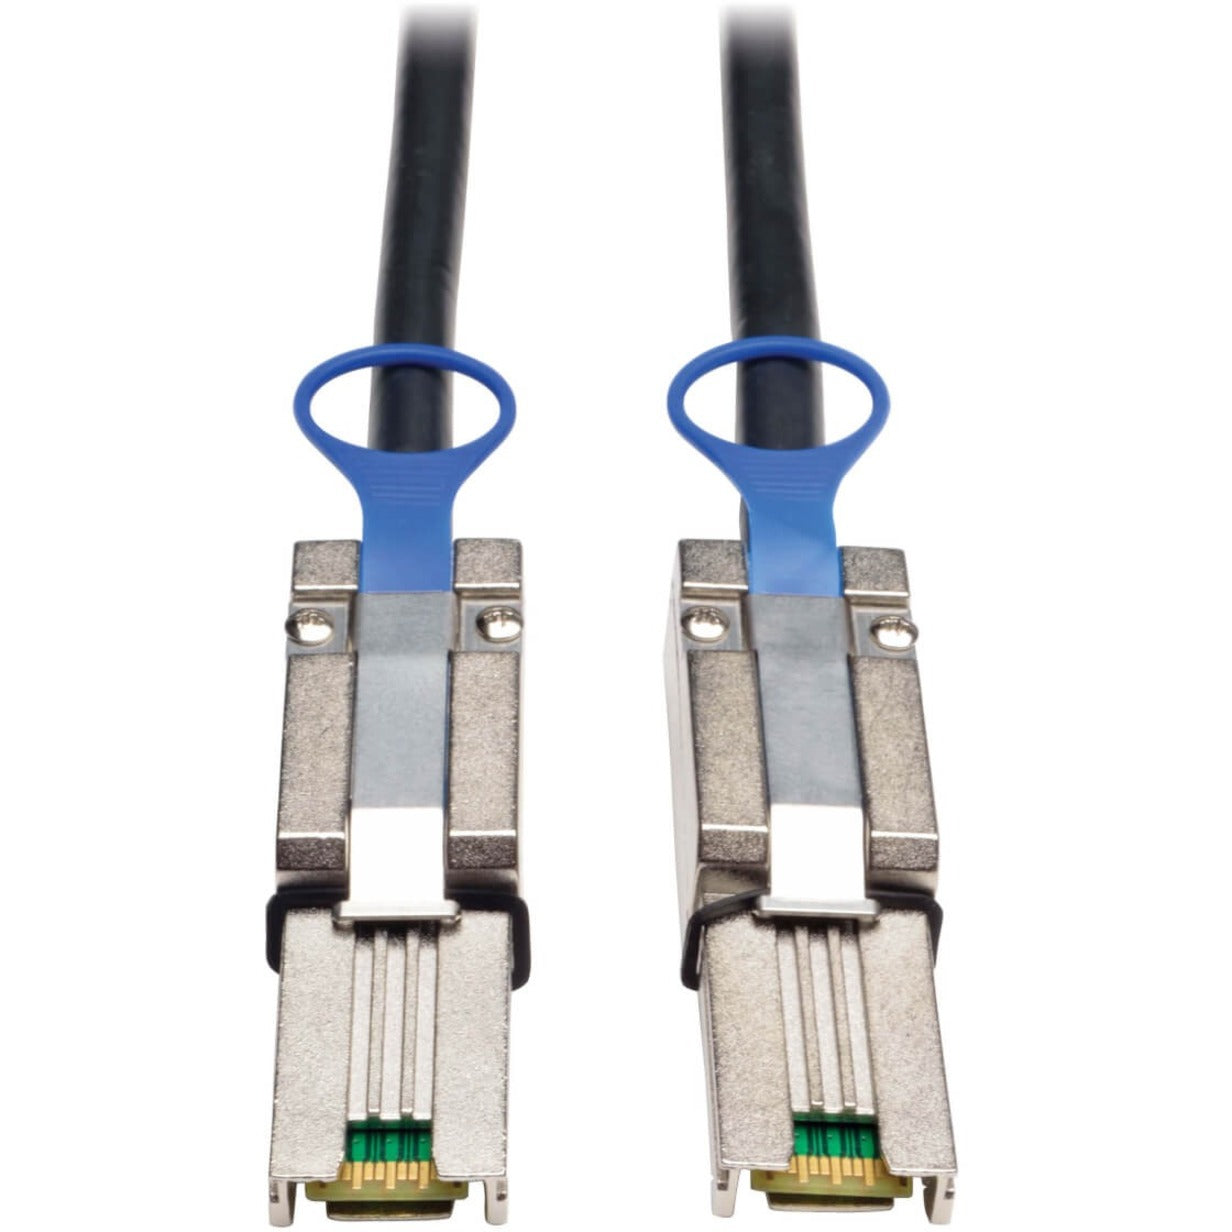 Tripp Lite S524-02M External SAS Cable, 2-Meter Mini-SAS (SFF-8088) to Mini-SAS (SFF-8088)